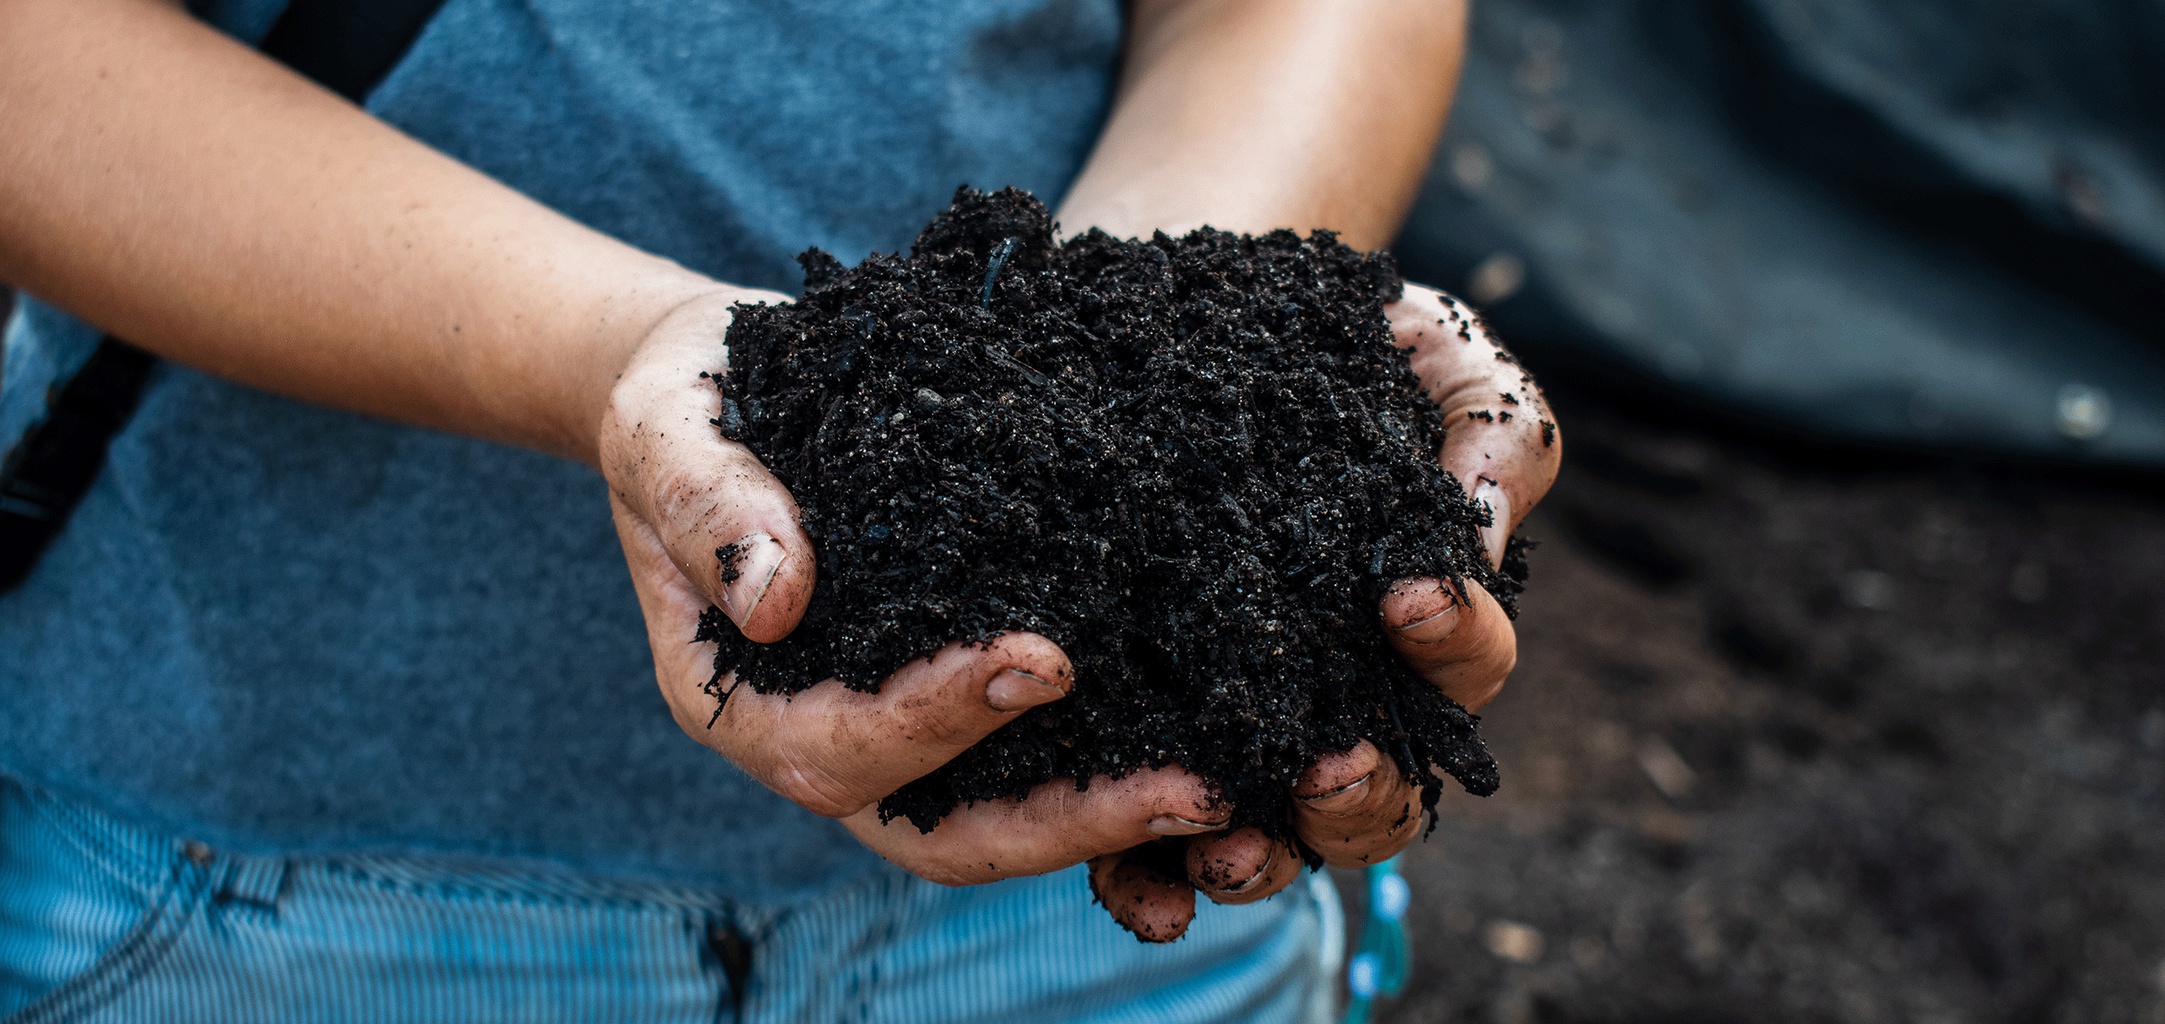 Comment réaliser du bon compost pour votre jardin ? - L'Atelier